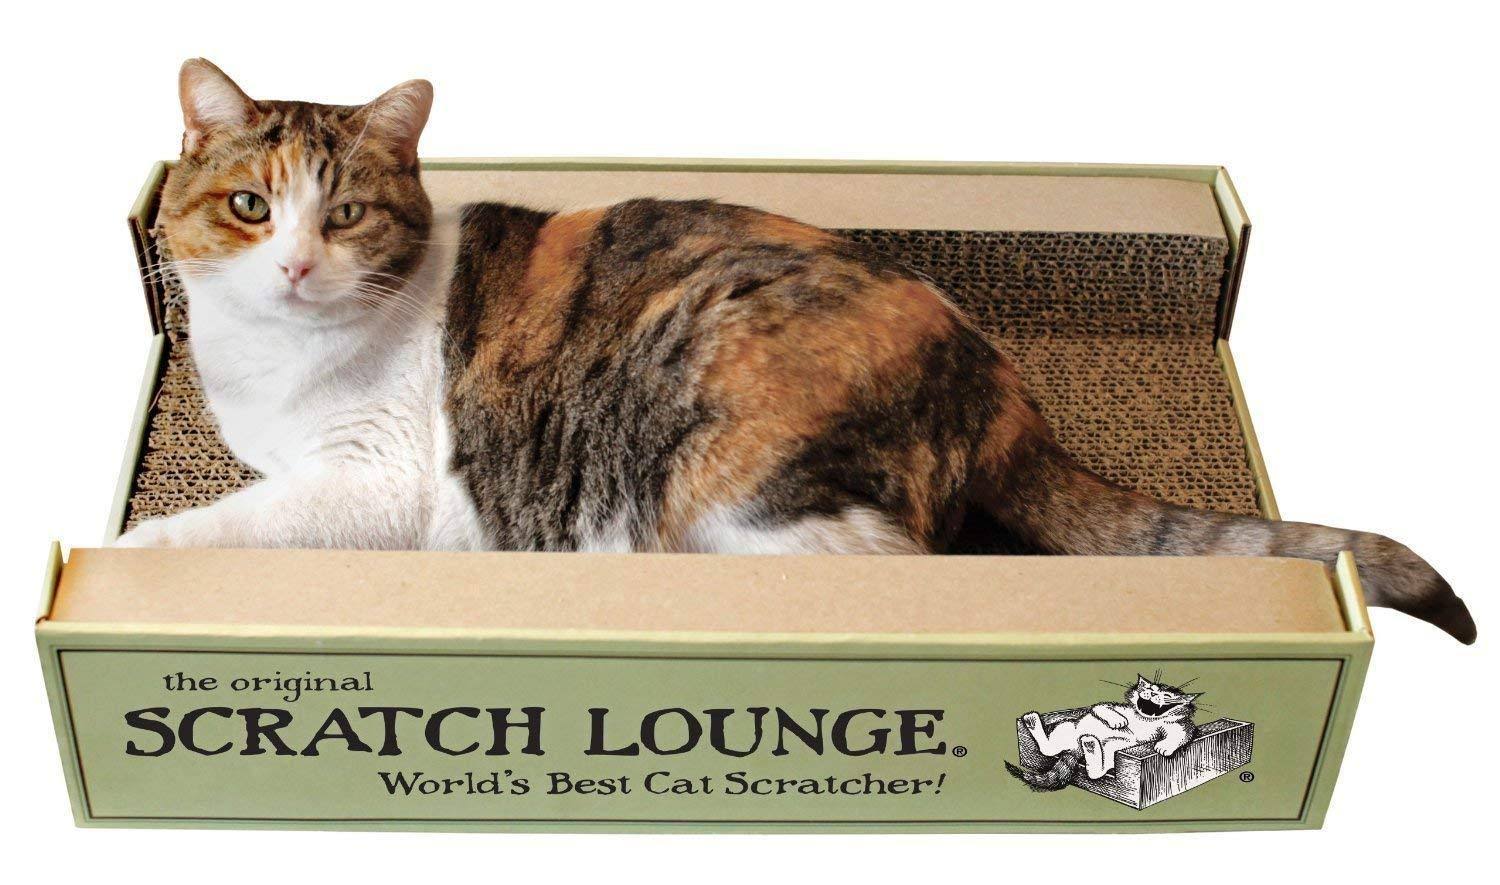 The Original Scratch Lounge Worlds Best Cat Scratcher